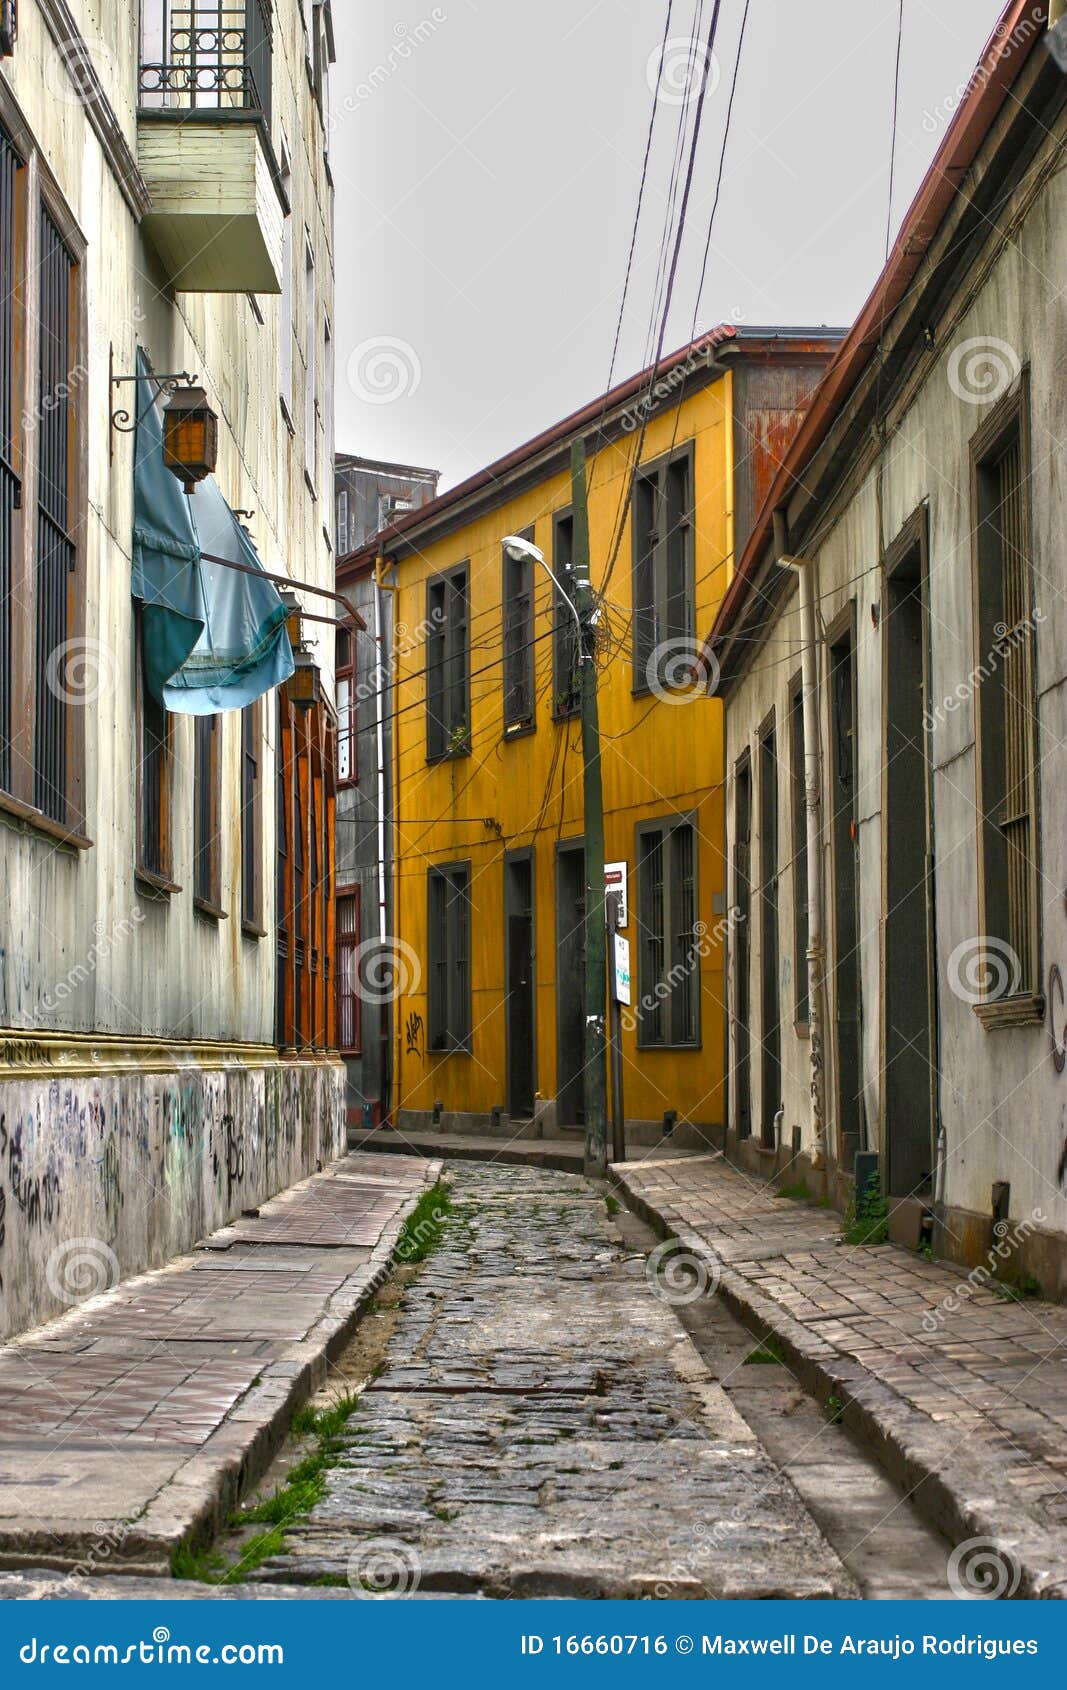 street in valparaiso